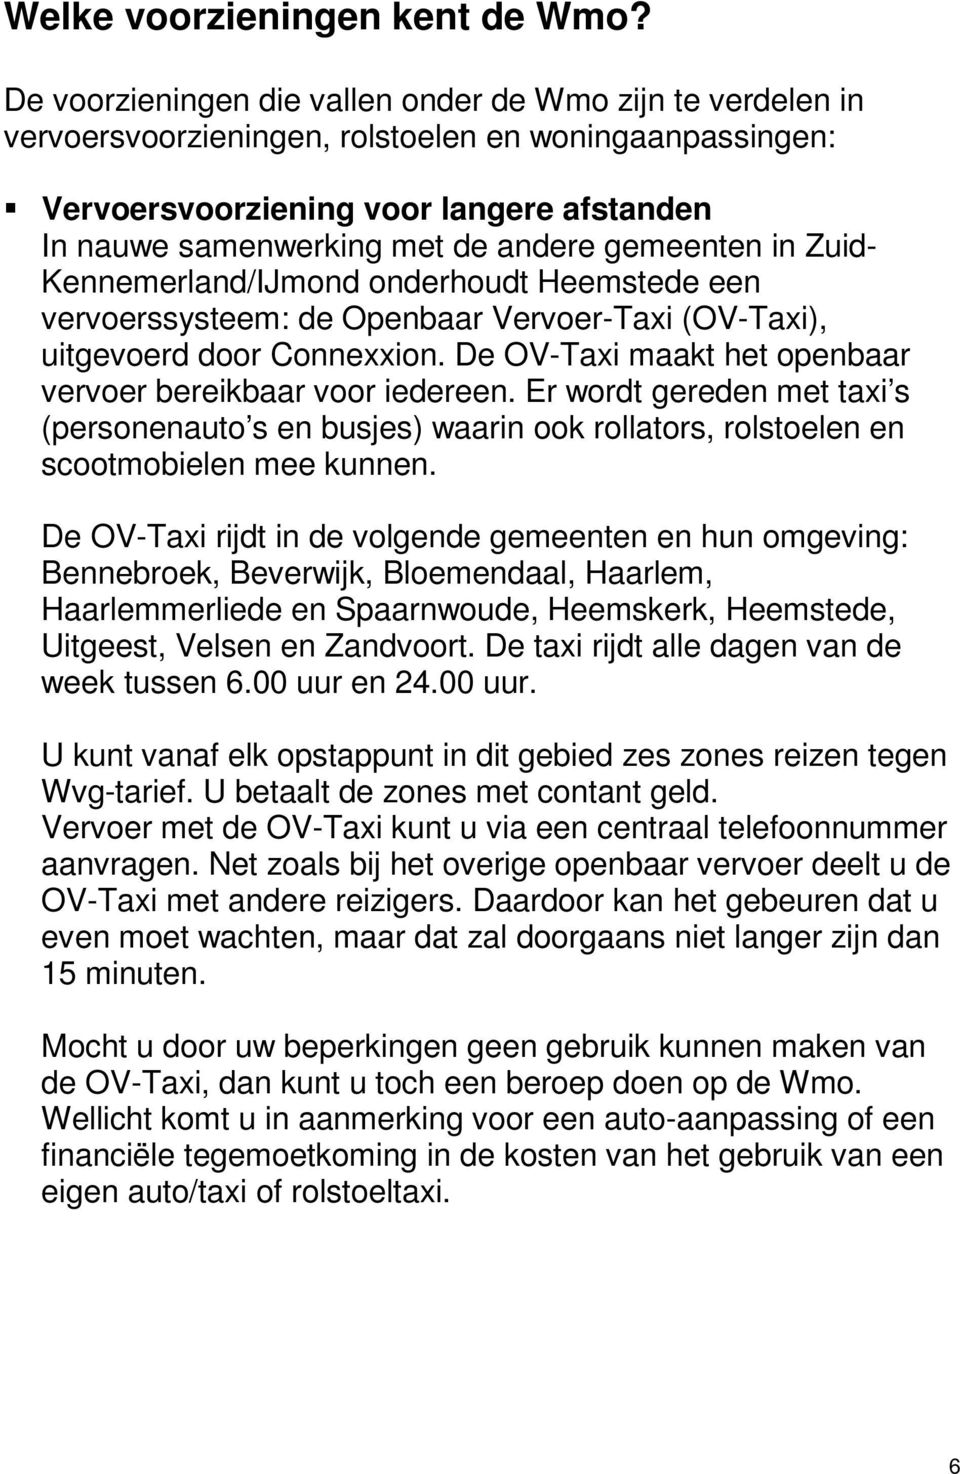 gemeenten in Zuid- Kennemerland/IJmond onderhoudt Heemstede een vervoerssysteem: de Openbaar Vervoer-Taxi (OV-Taxi), uitgevoerd door Connexxion.